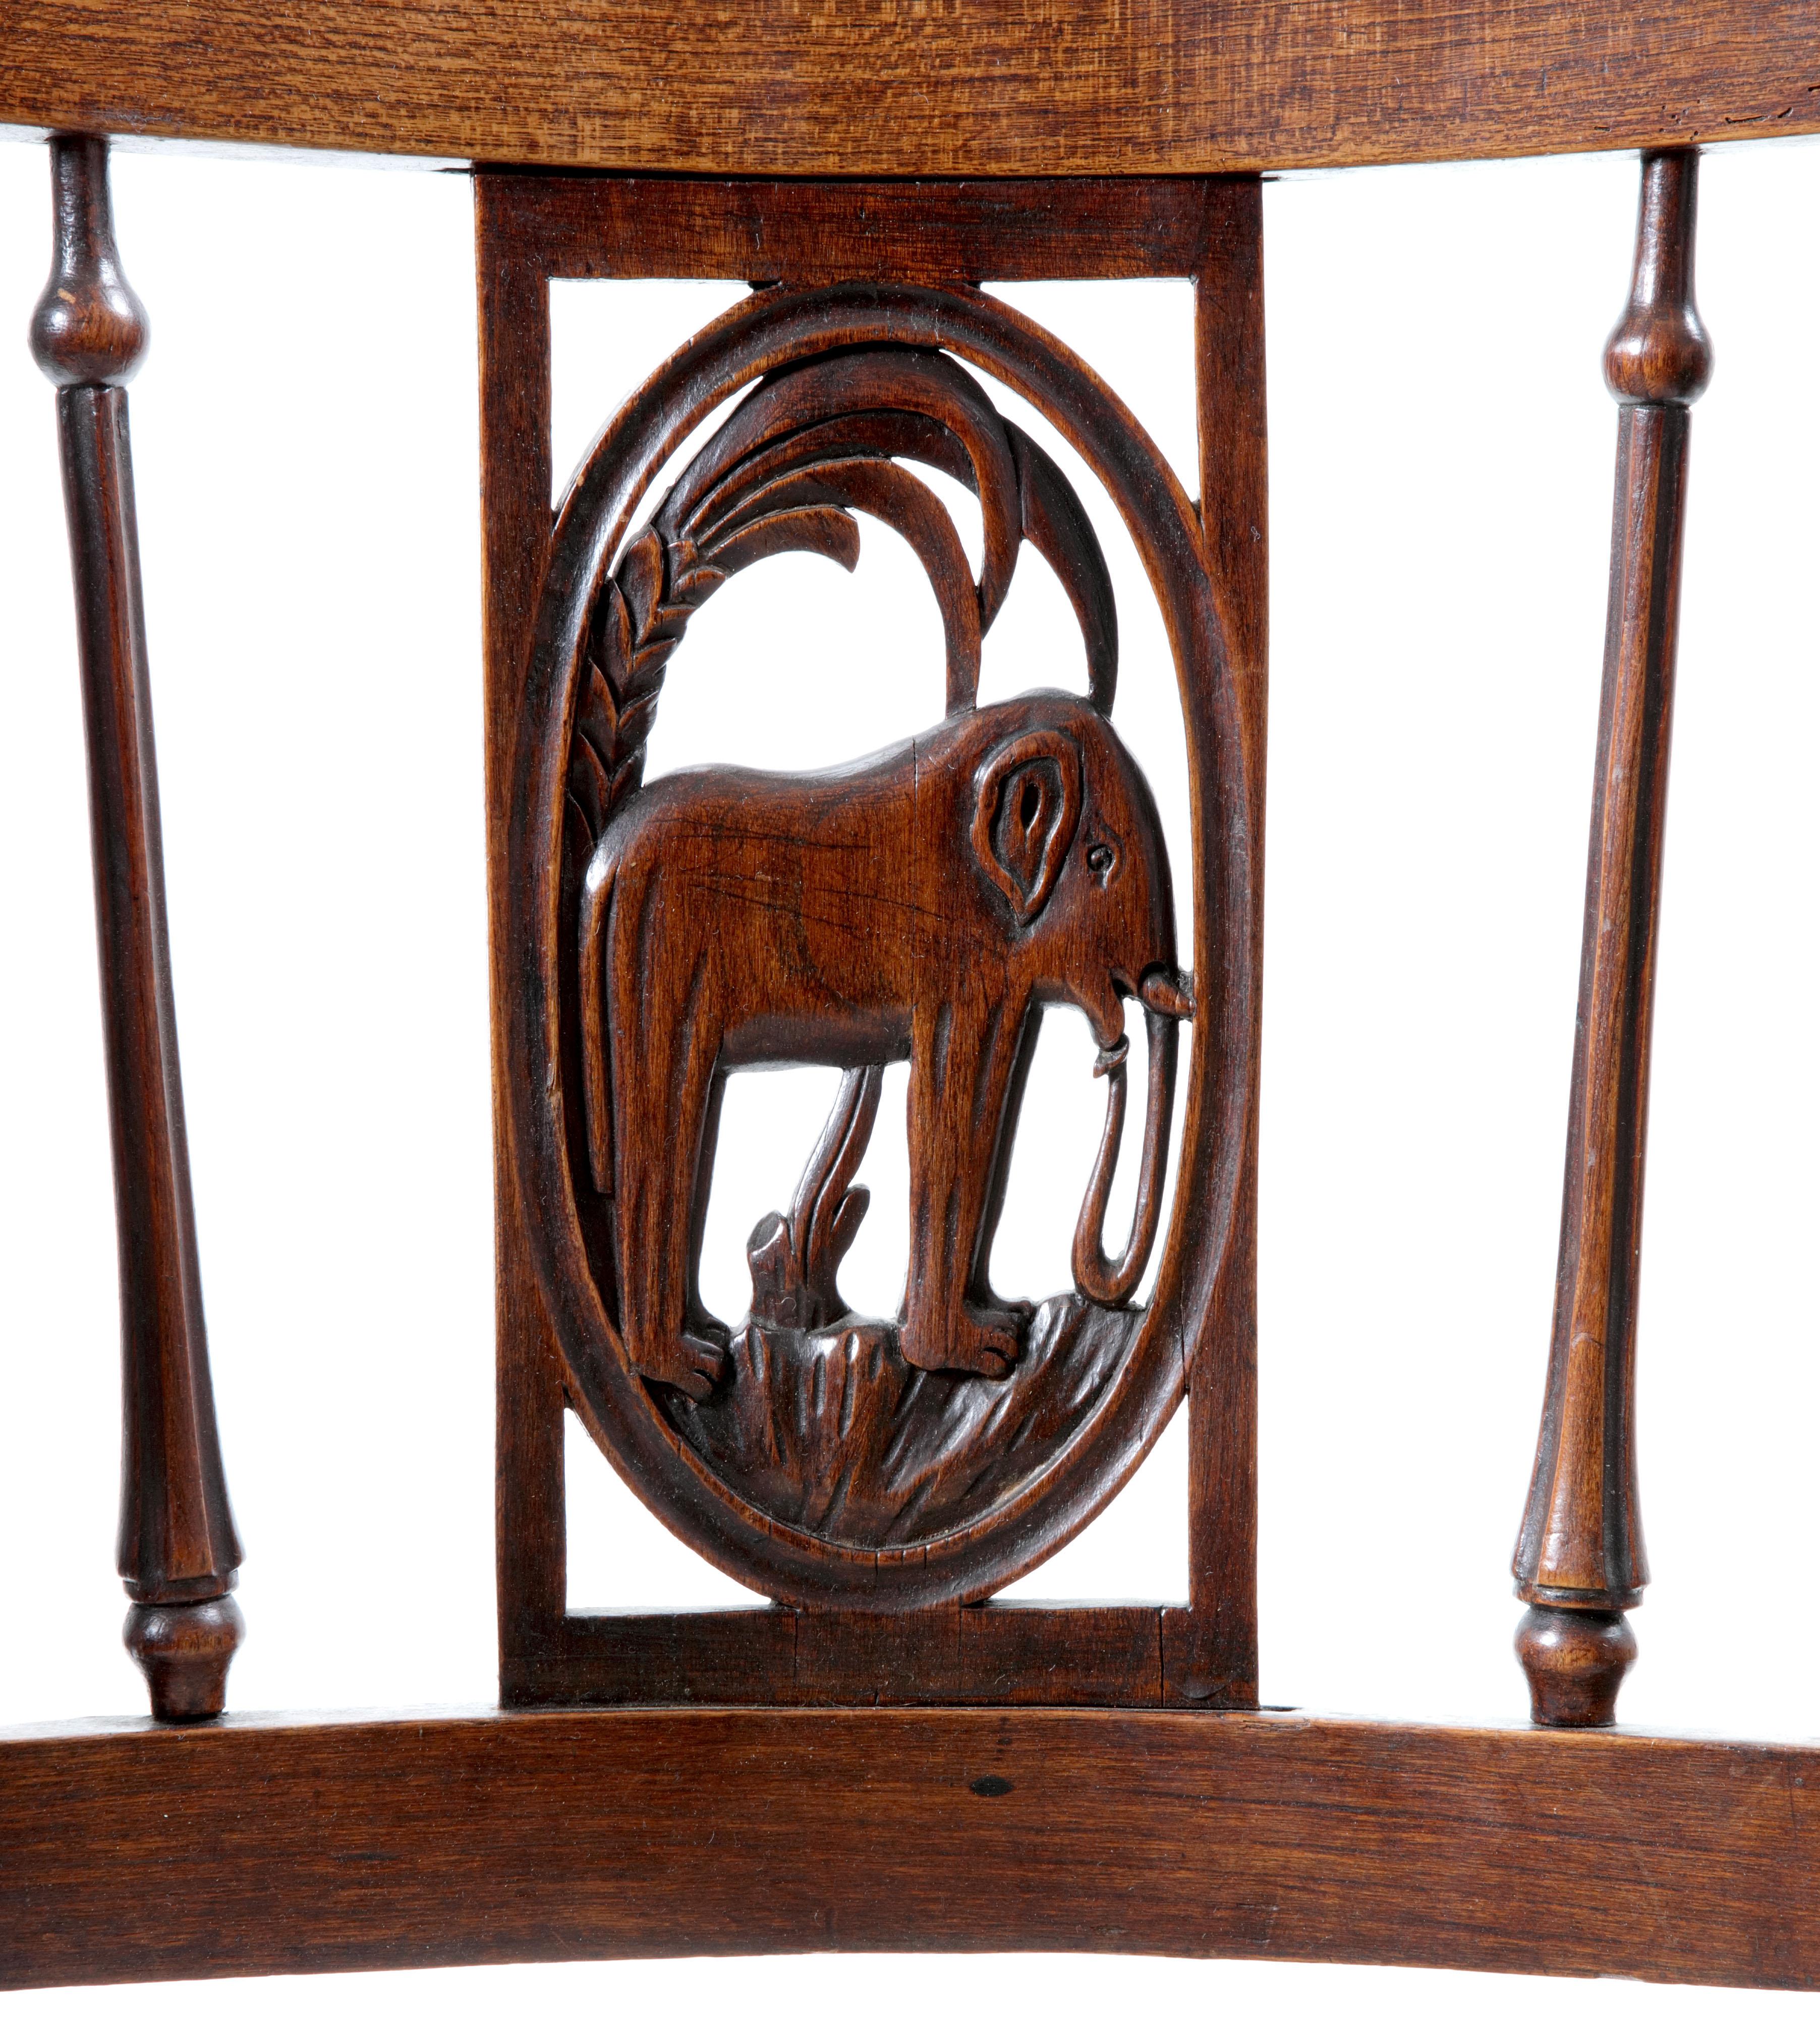 Un ensemble de six chaises Directoire françaises avec des dossiers figuratifs représentant des animaux africains

France, début du XIXe siècle


Chacune d'elles est en bois d'orme et de poirier, avec un rembourrage ultérieur, et chacune d'elles